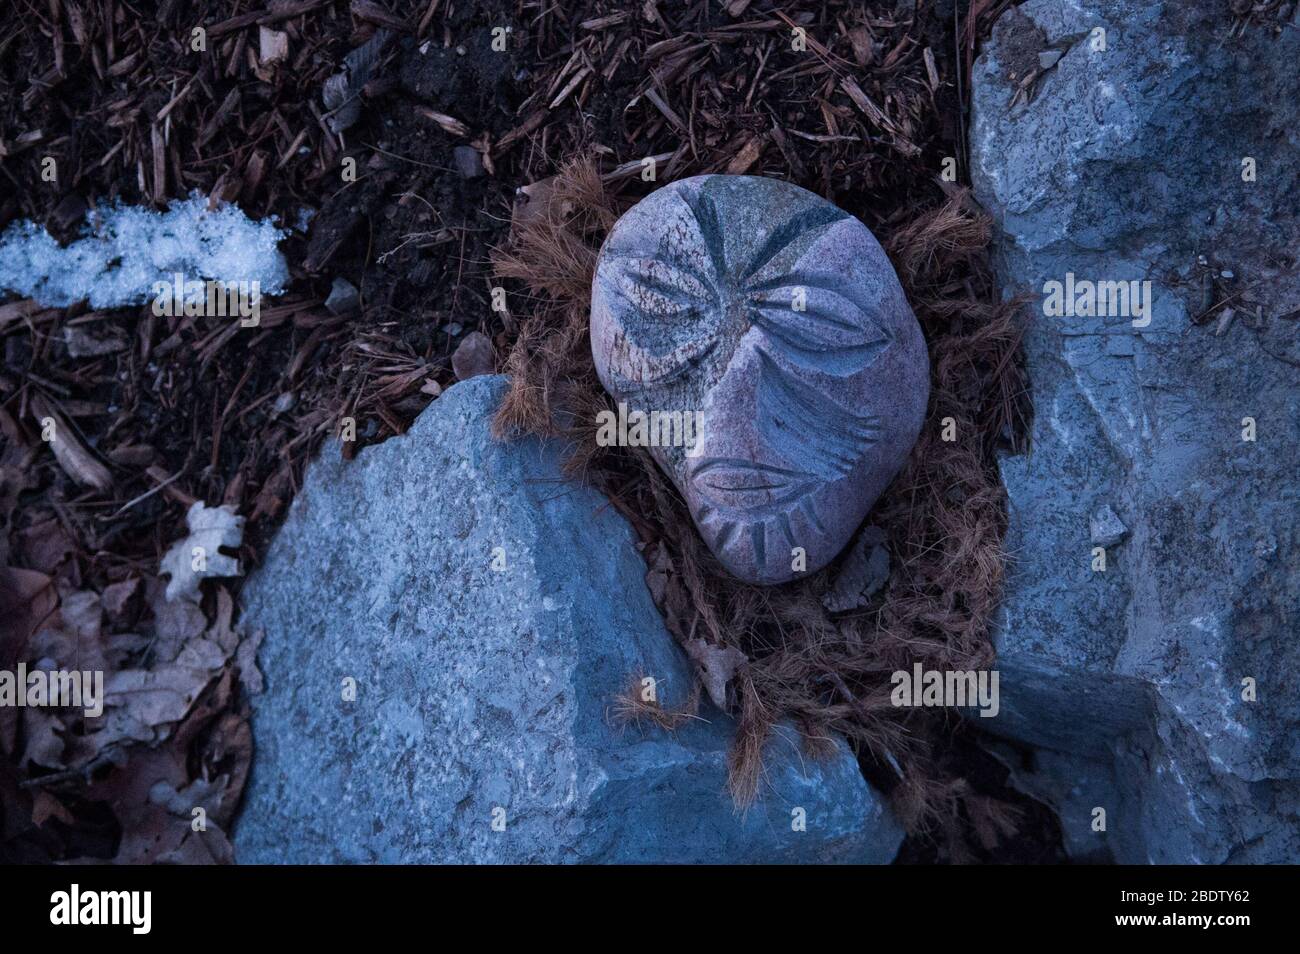 Masque visage sculpté dans la pierre avec des feuilles de cheveux regardant comme portrait femelle de Rock et des feuilles et des brindilles de neige signifiant Thaw de printemps Banque D'Images